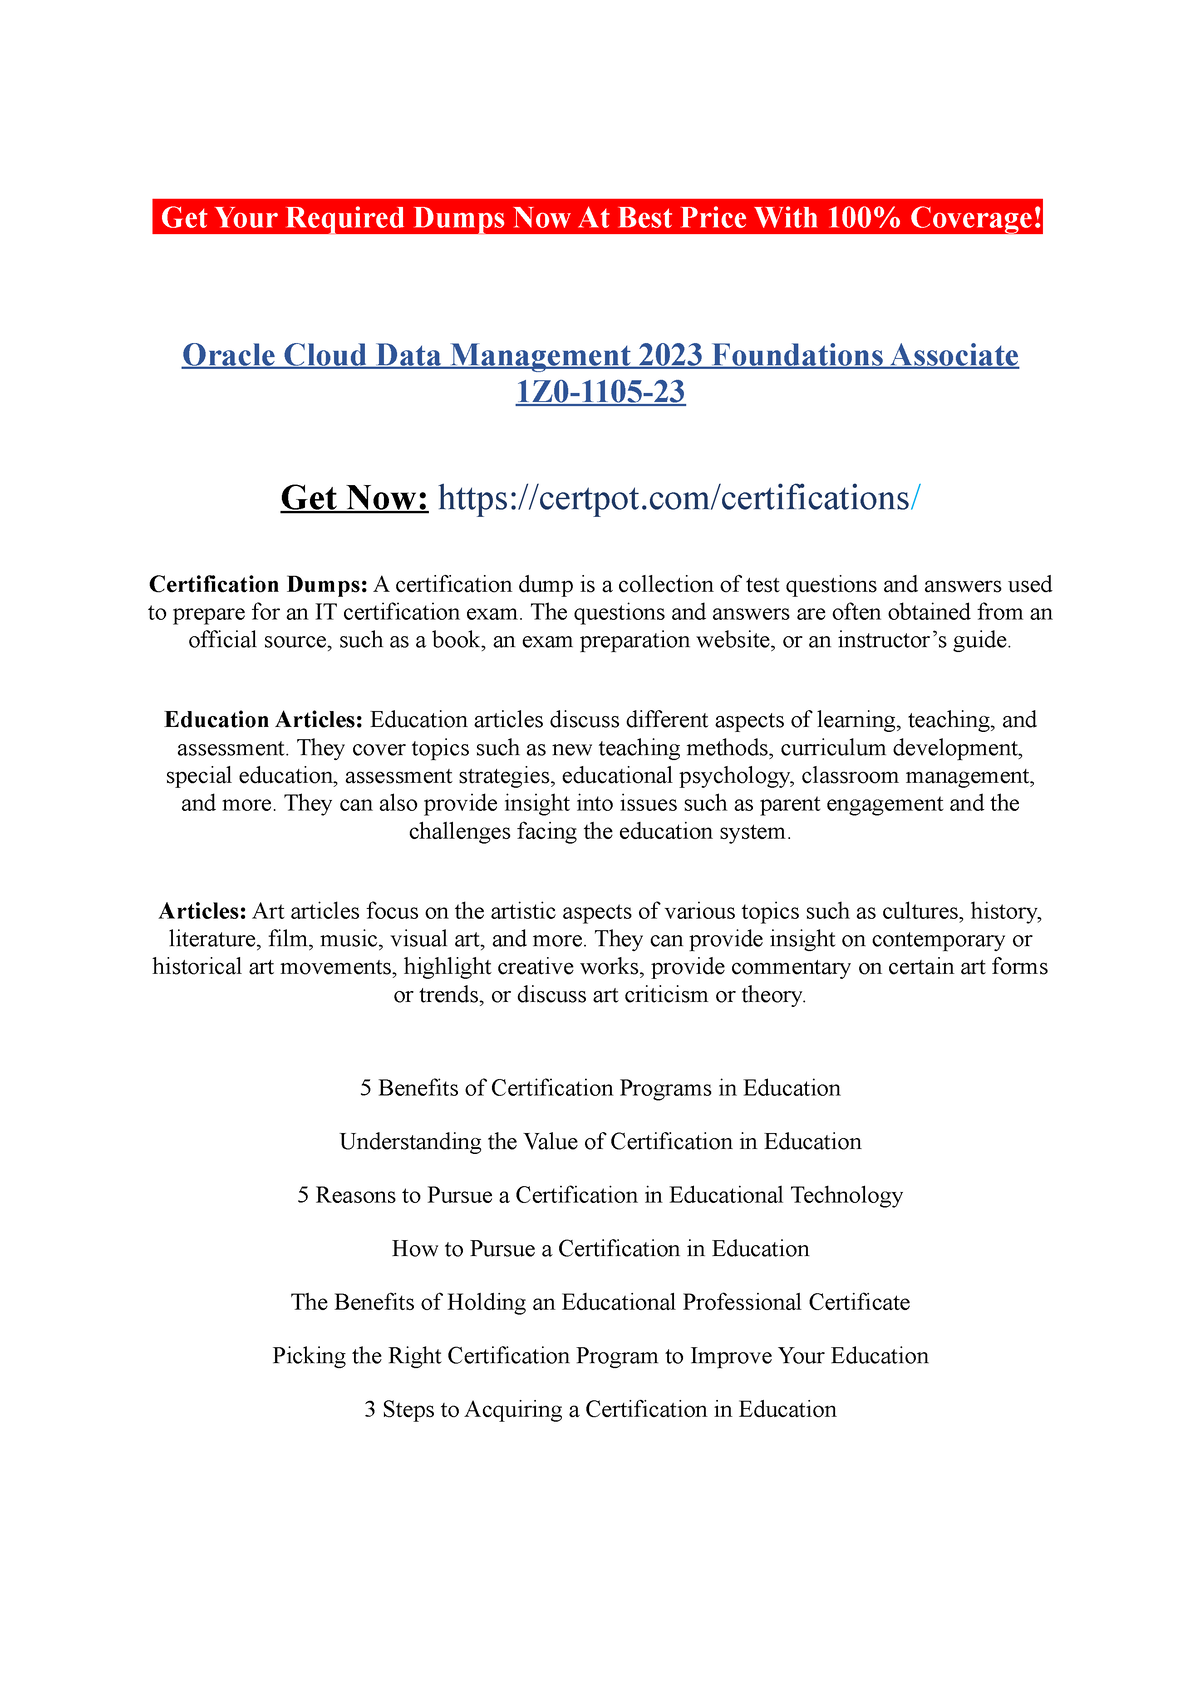 Oracle Cloud Data Management 2023 Foundations Associate 1Z0110523